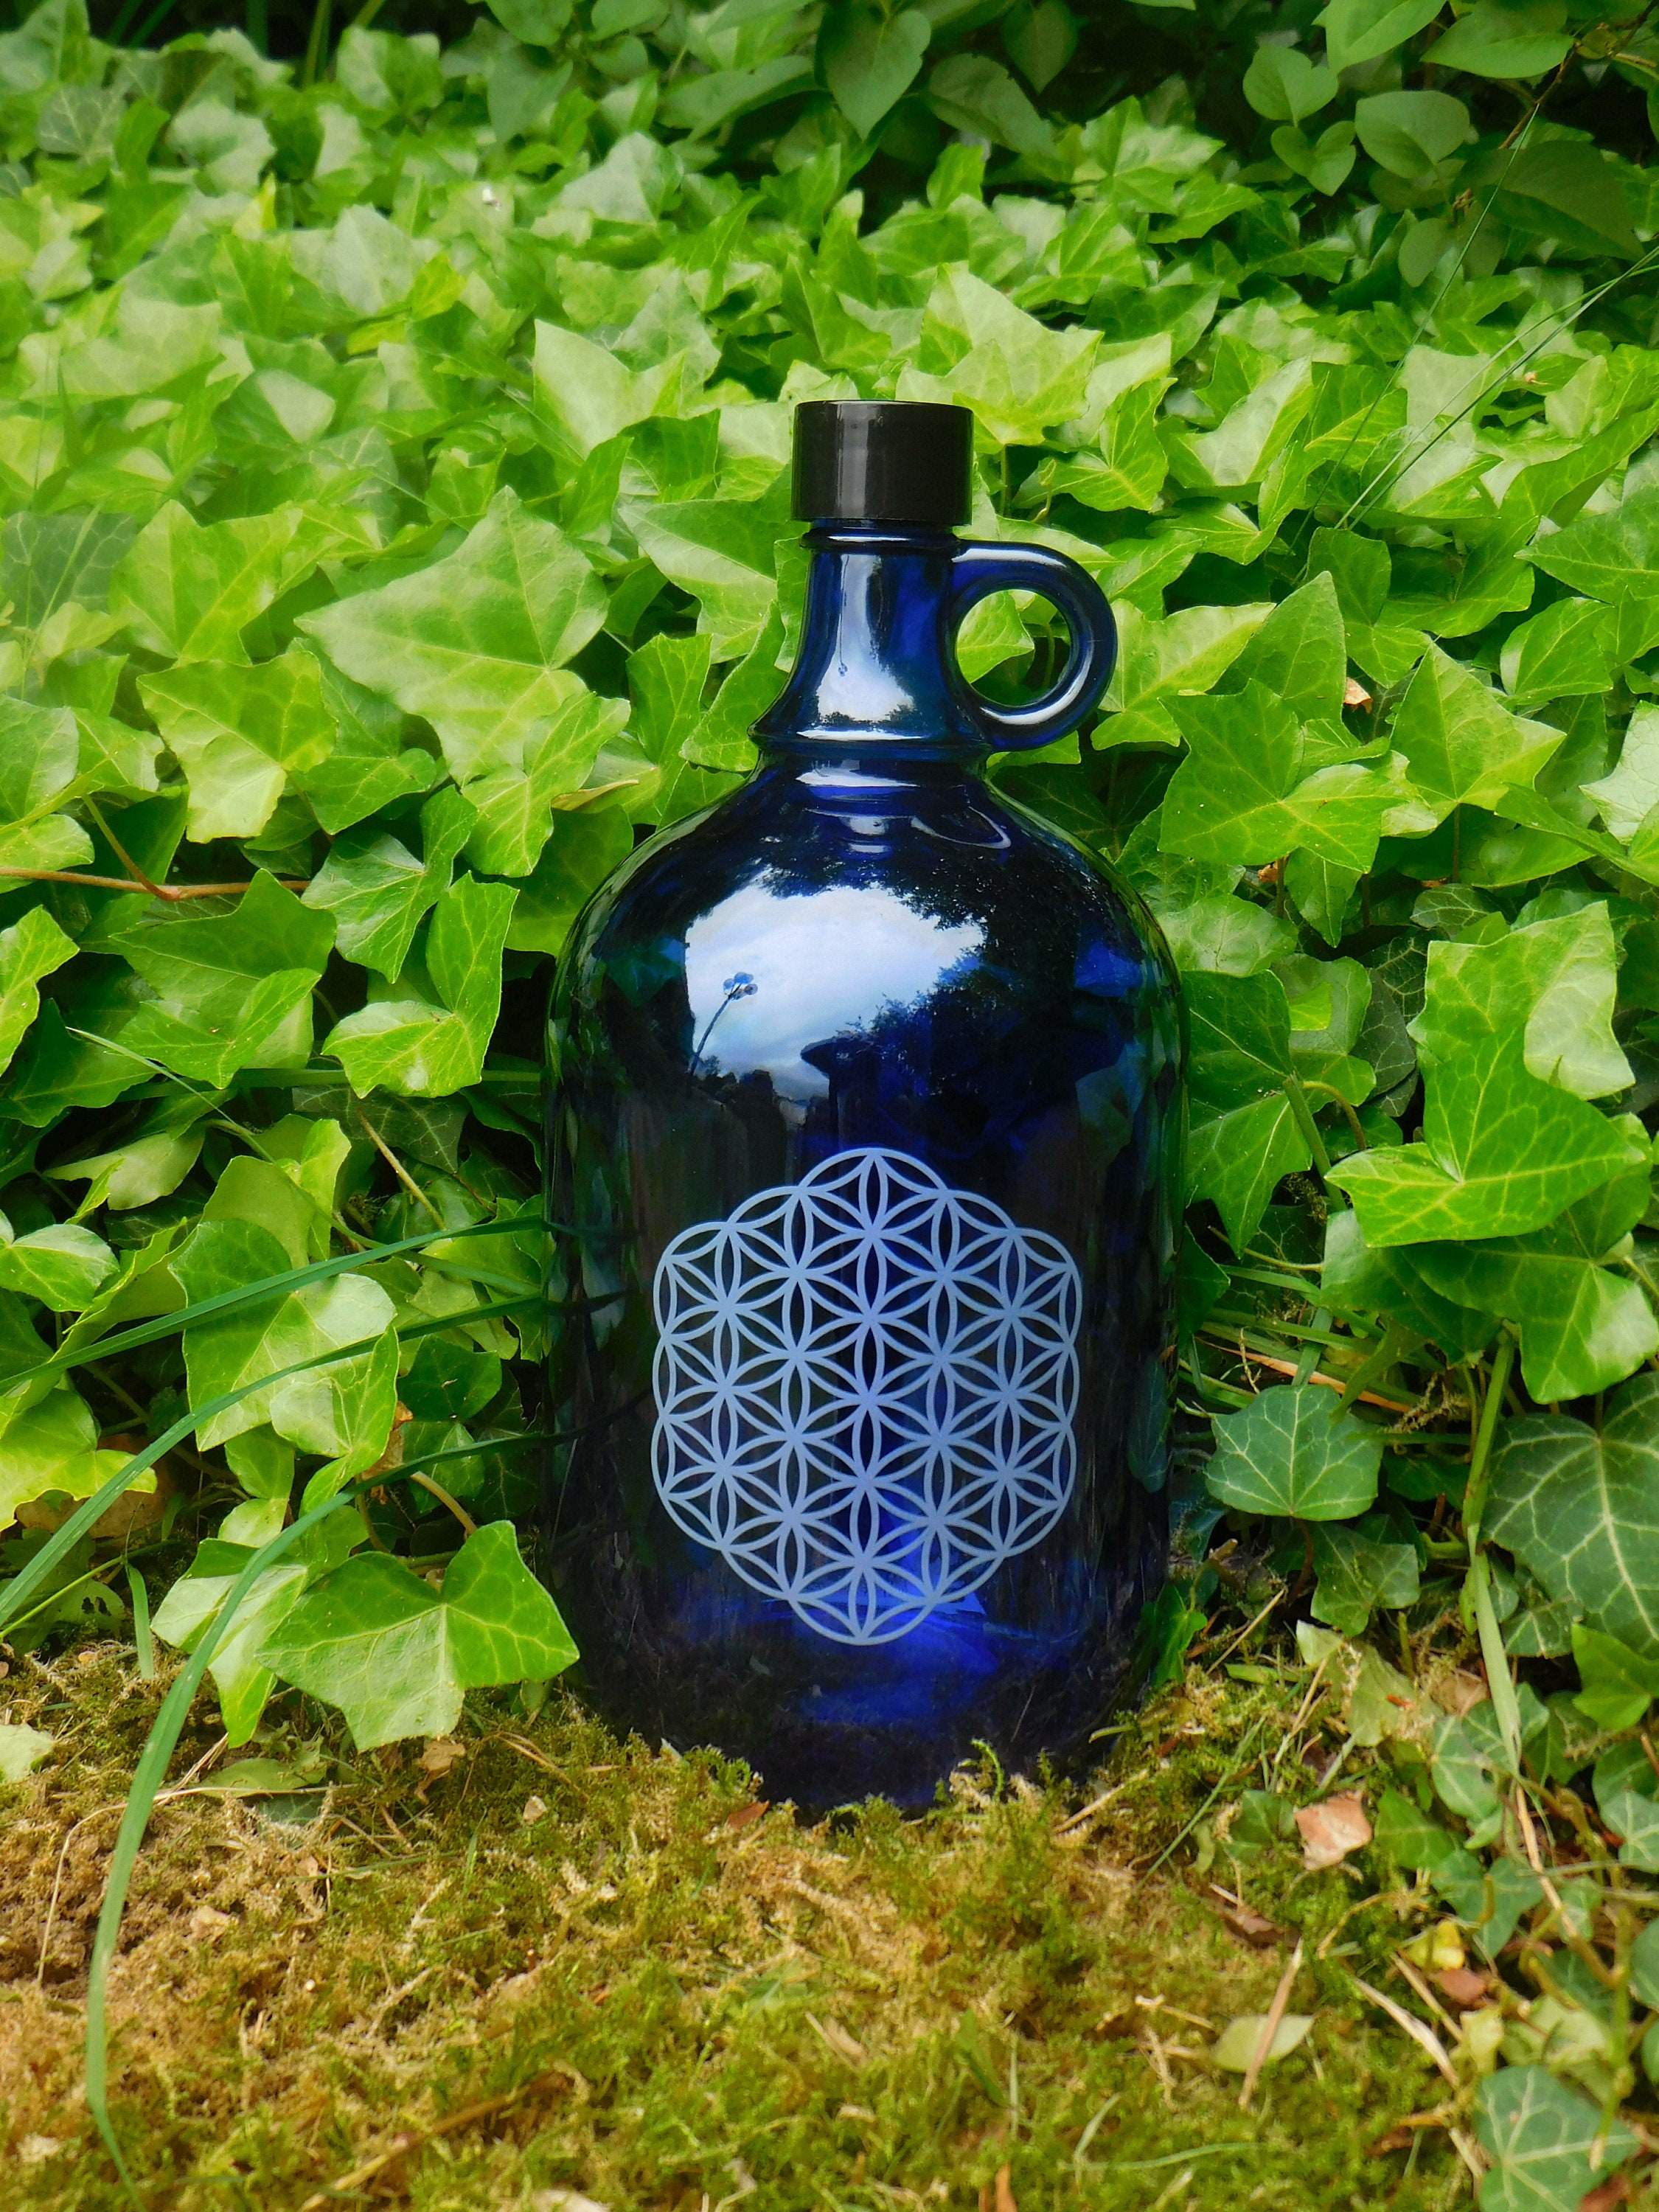 Botella de cristal azul de 2 litros con asa con flor de la vida